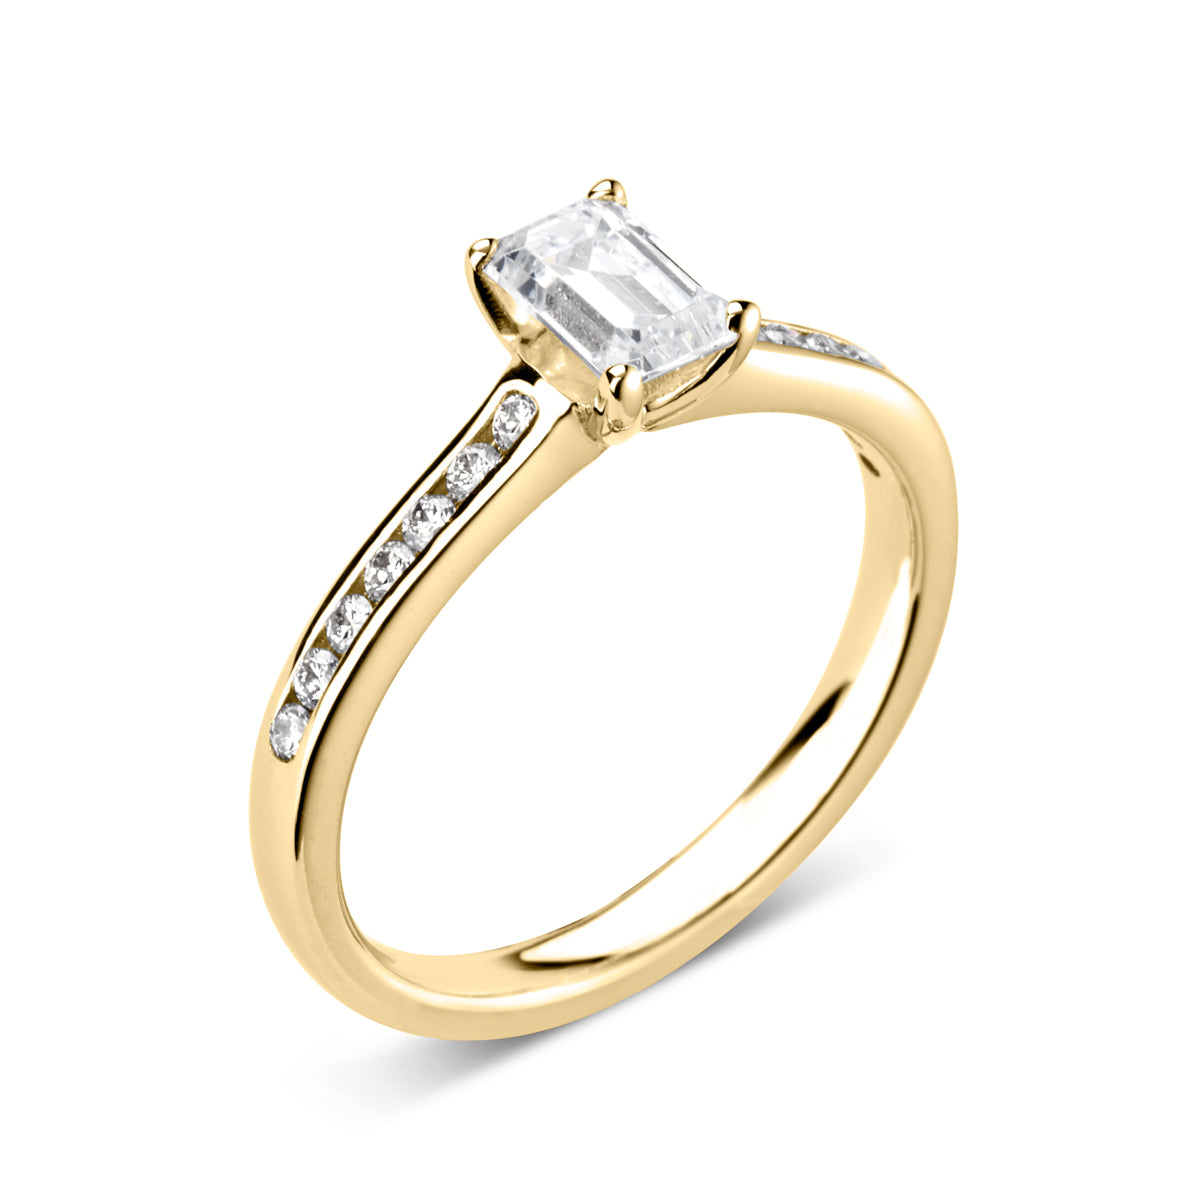 Emerald cut 4 claw diamond channel set ring